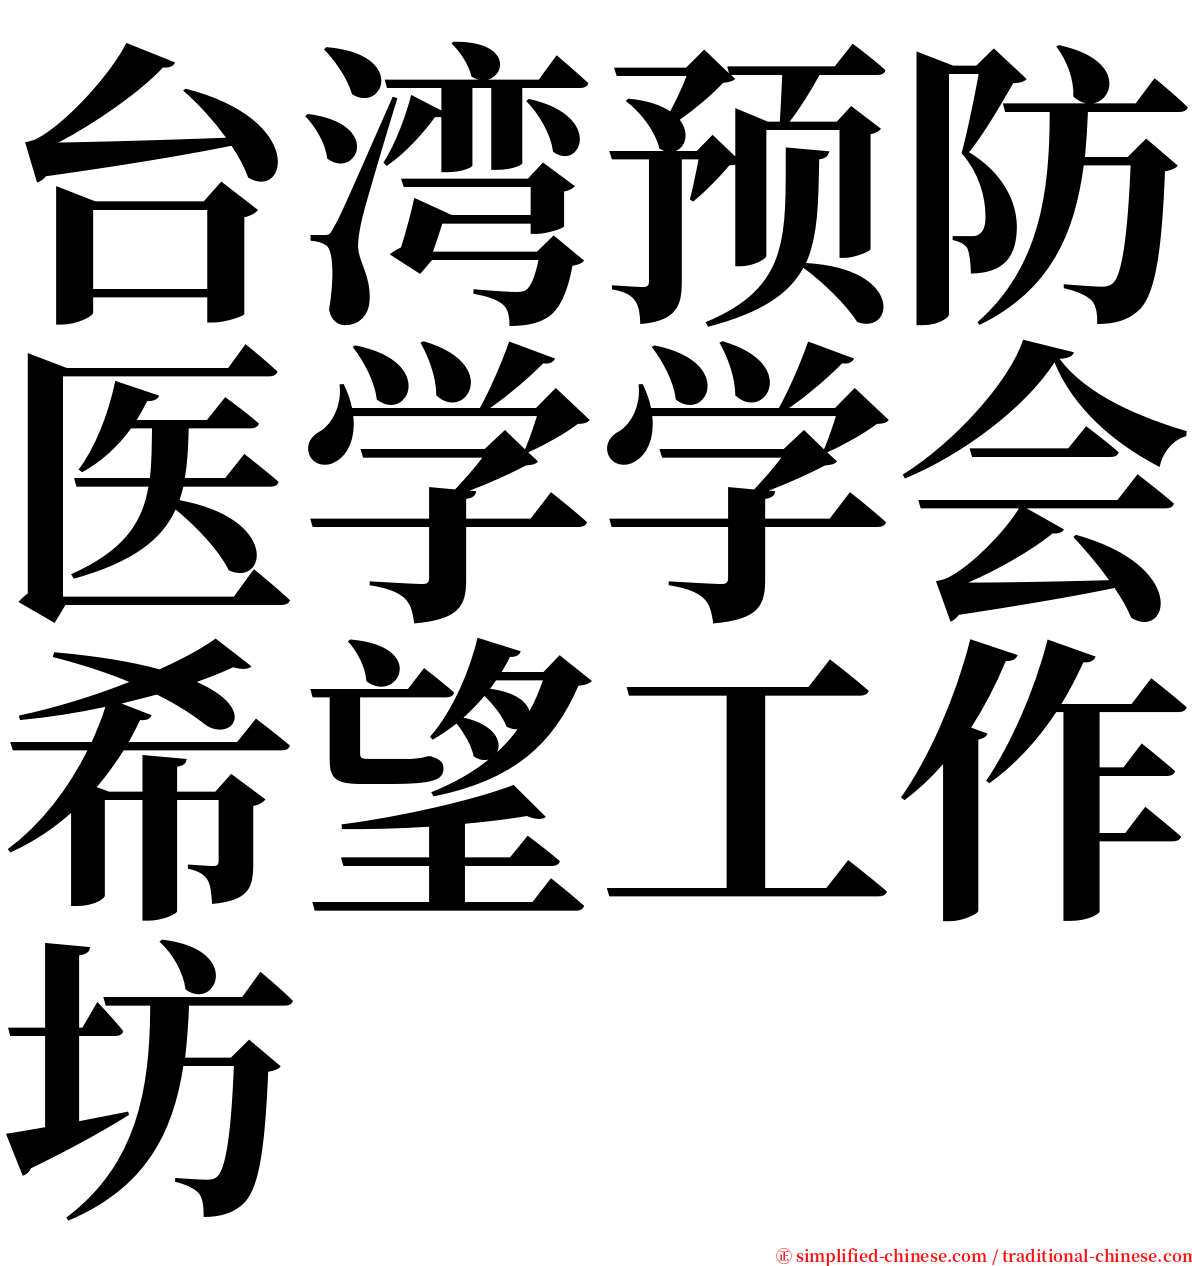 台湾预防医学学会希望工作坊 serif font